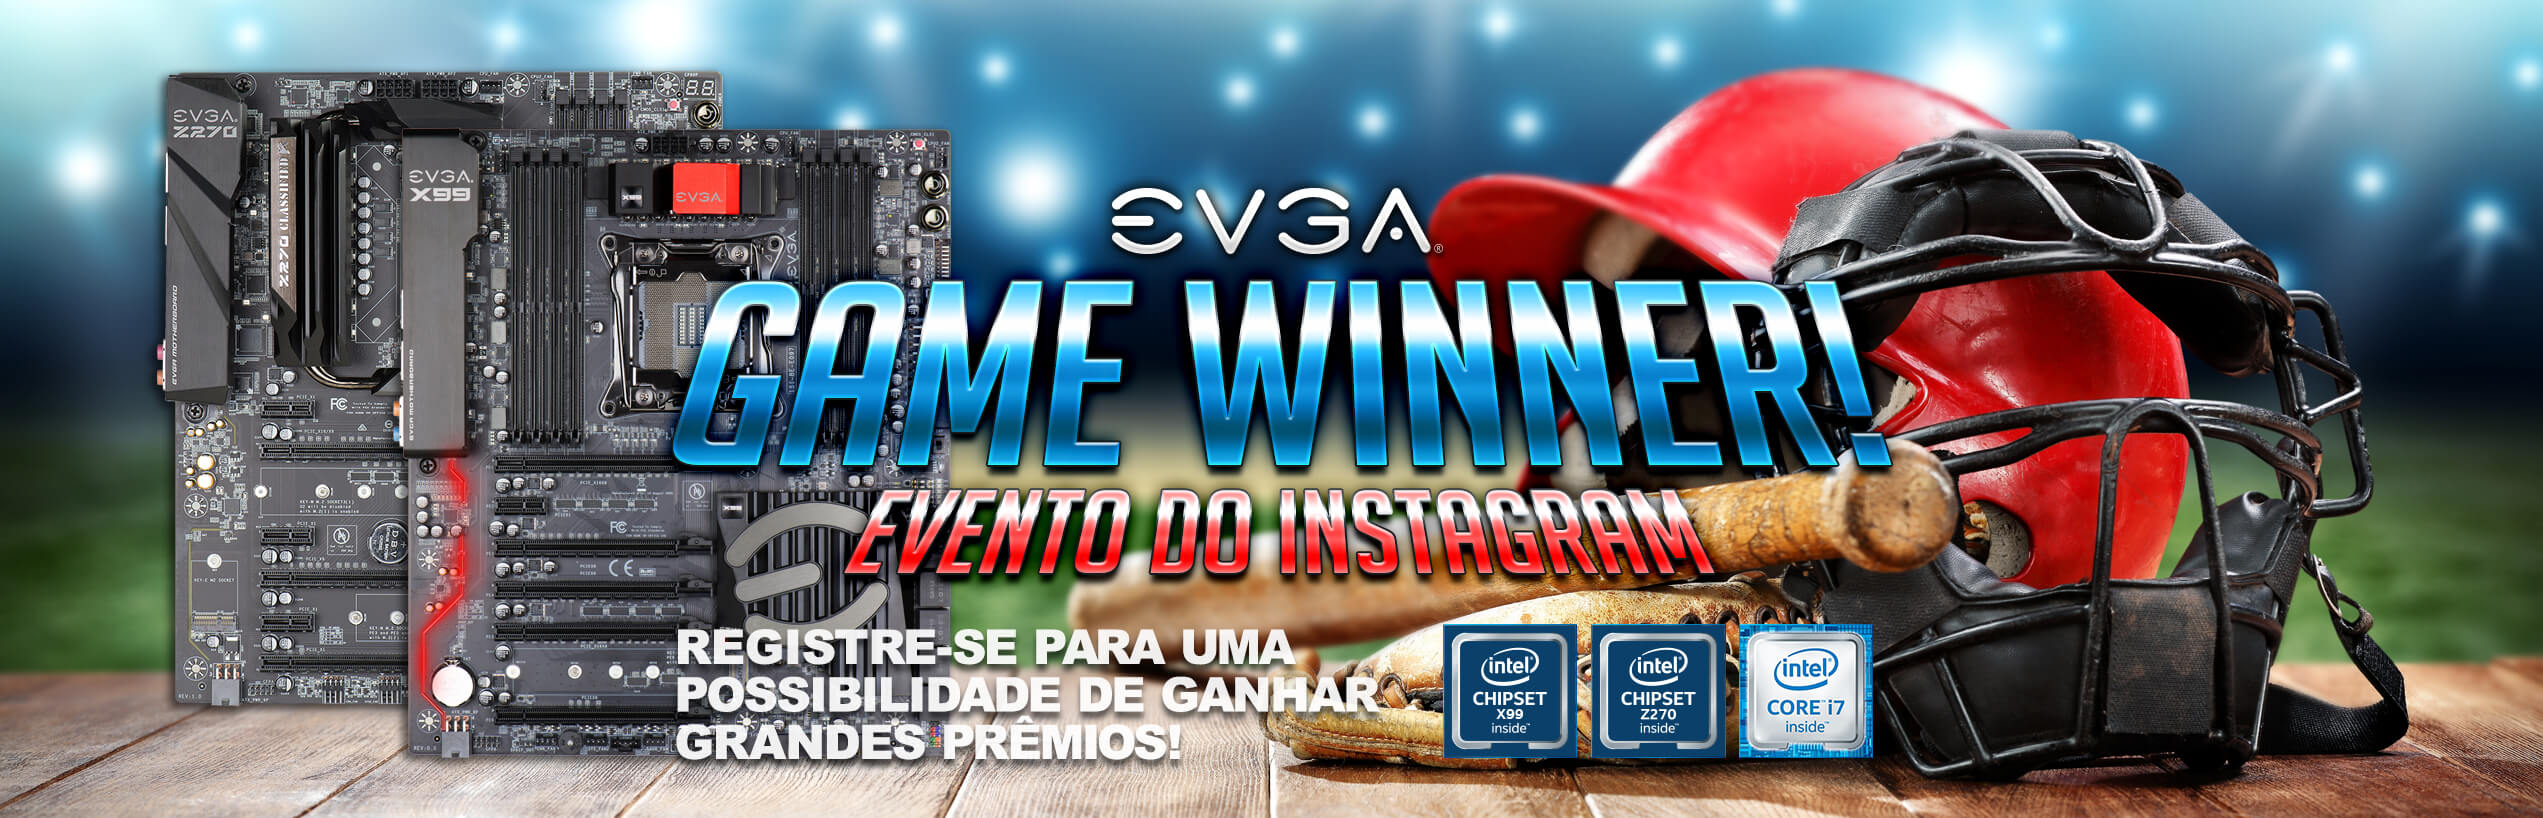 EVGA Game Winner! Evento do Instagram